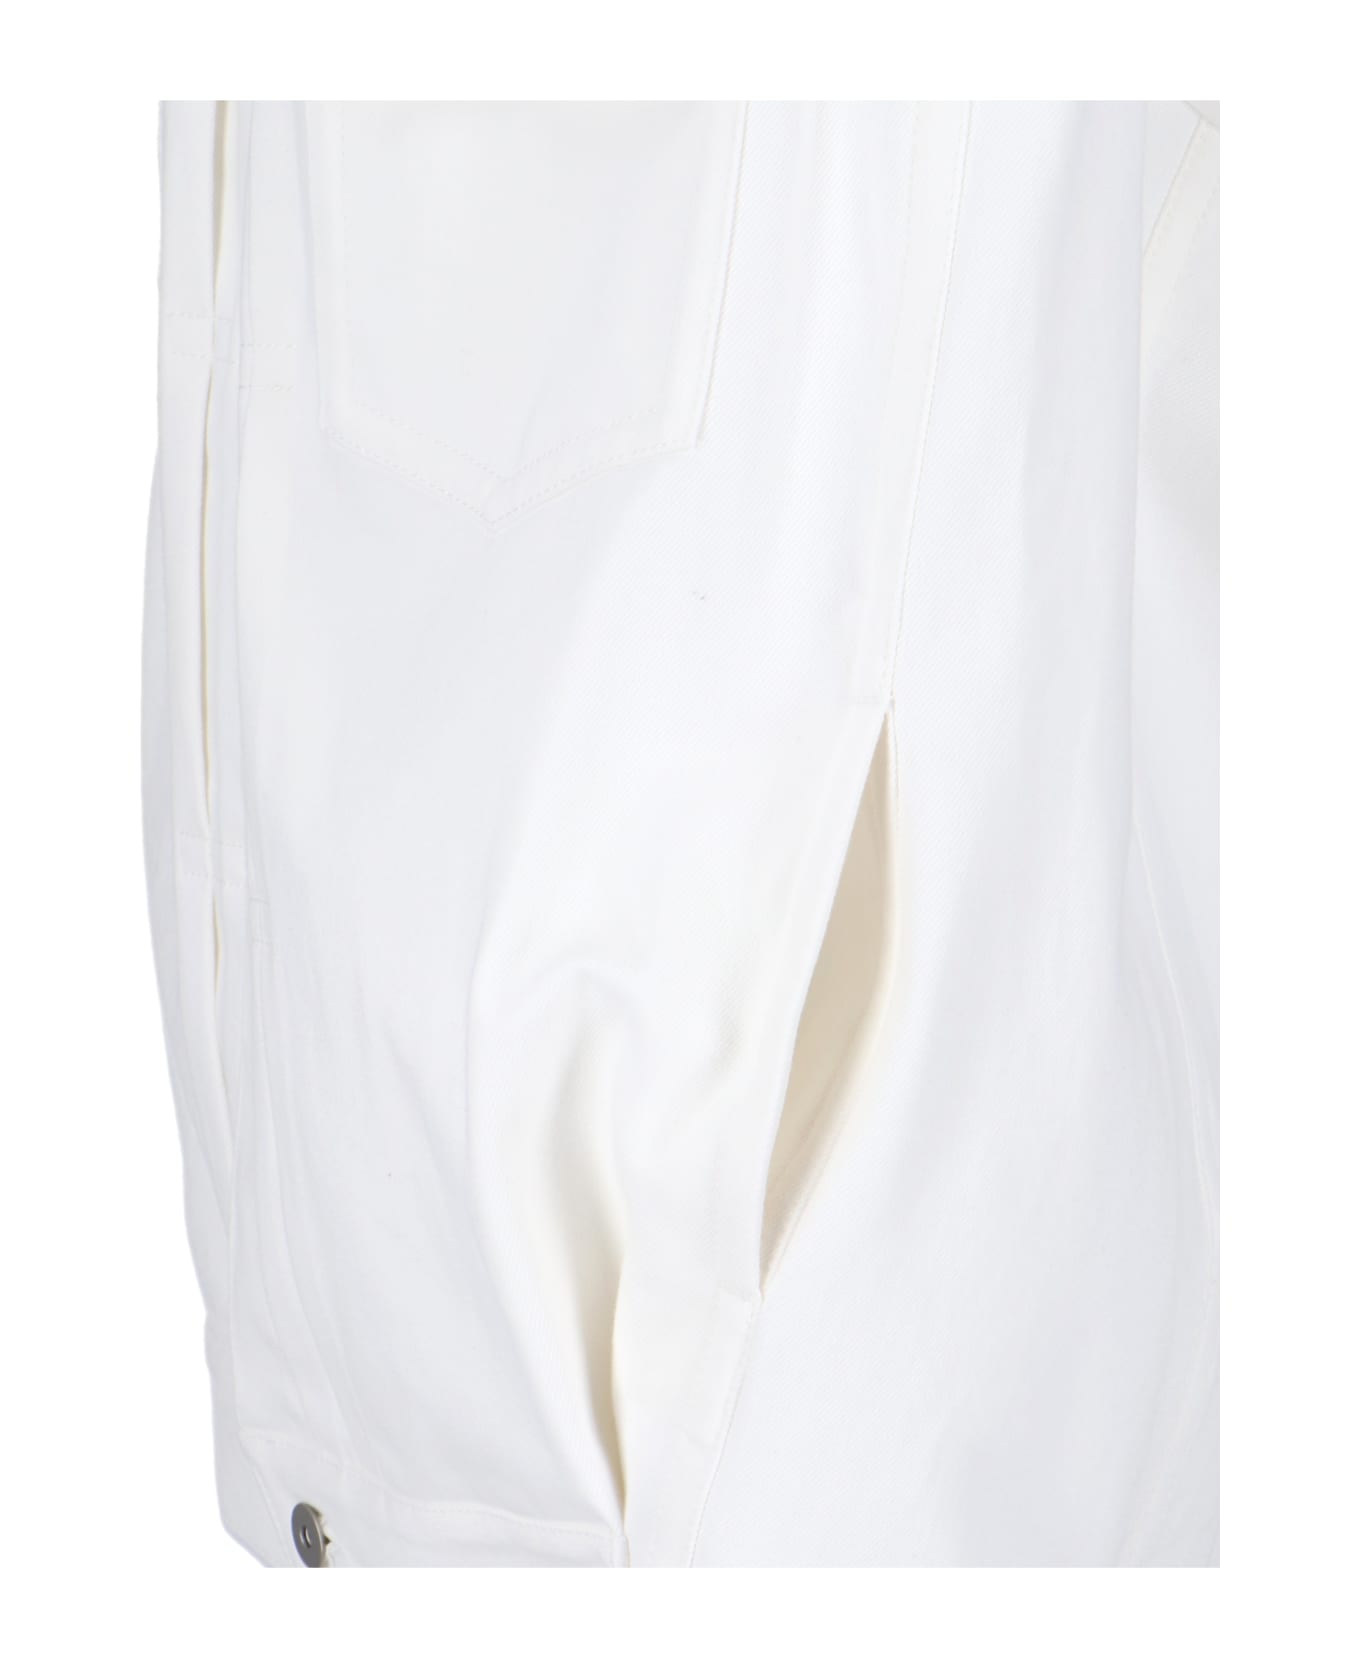 Sacai Sleeveless Shirt Jacket - Off White